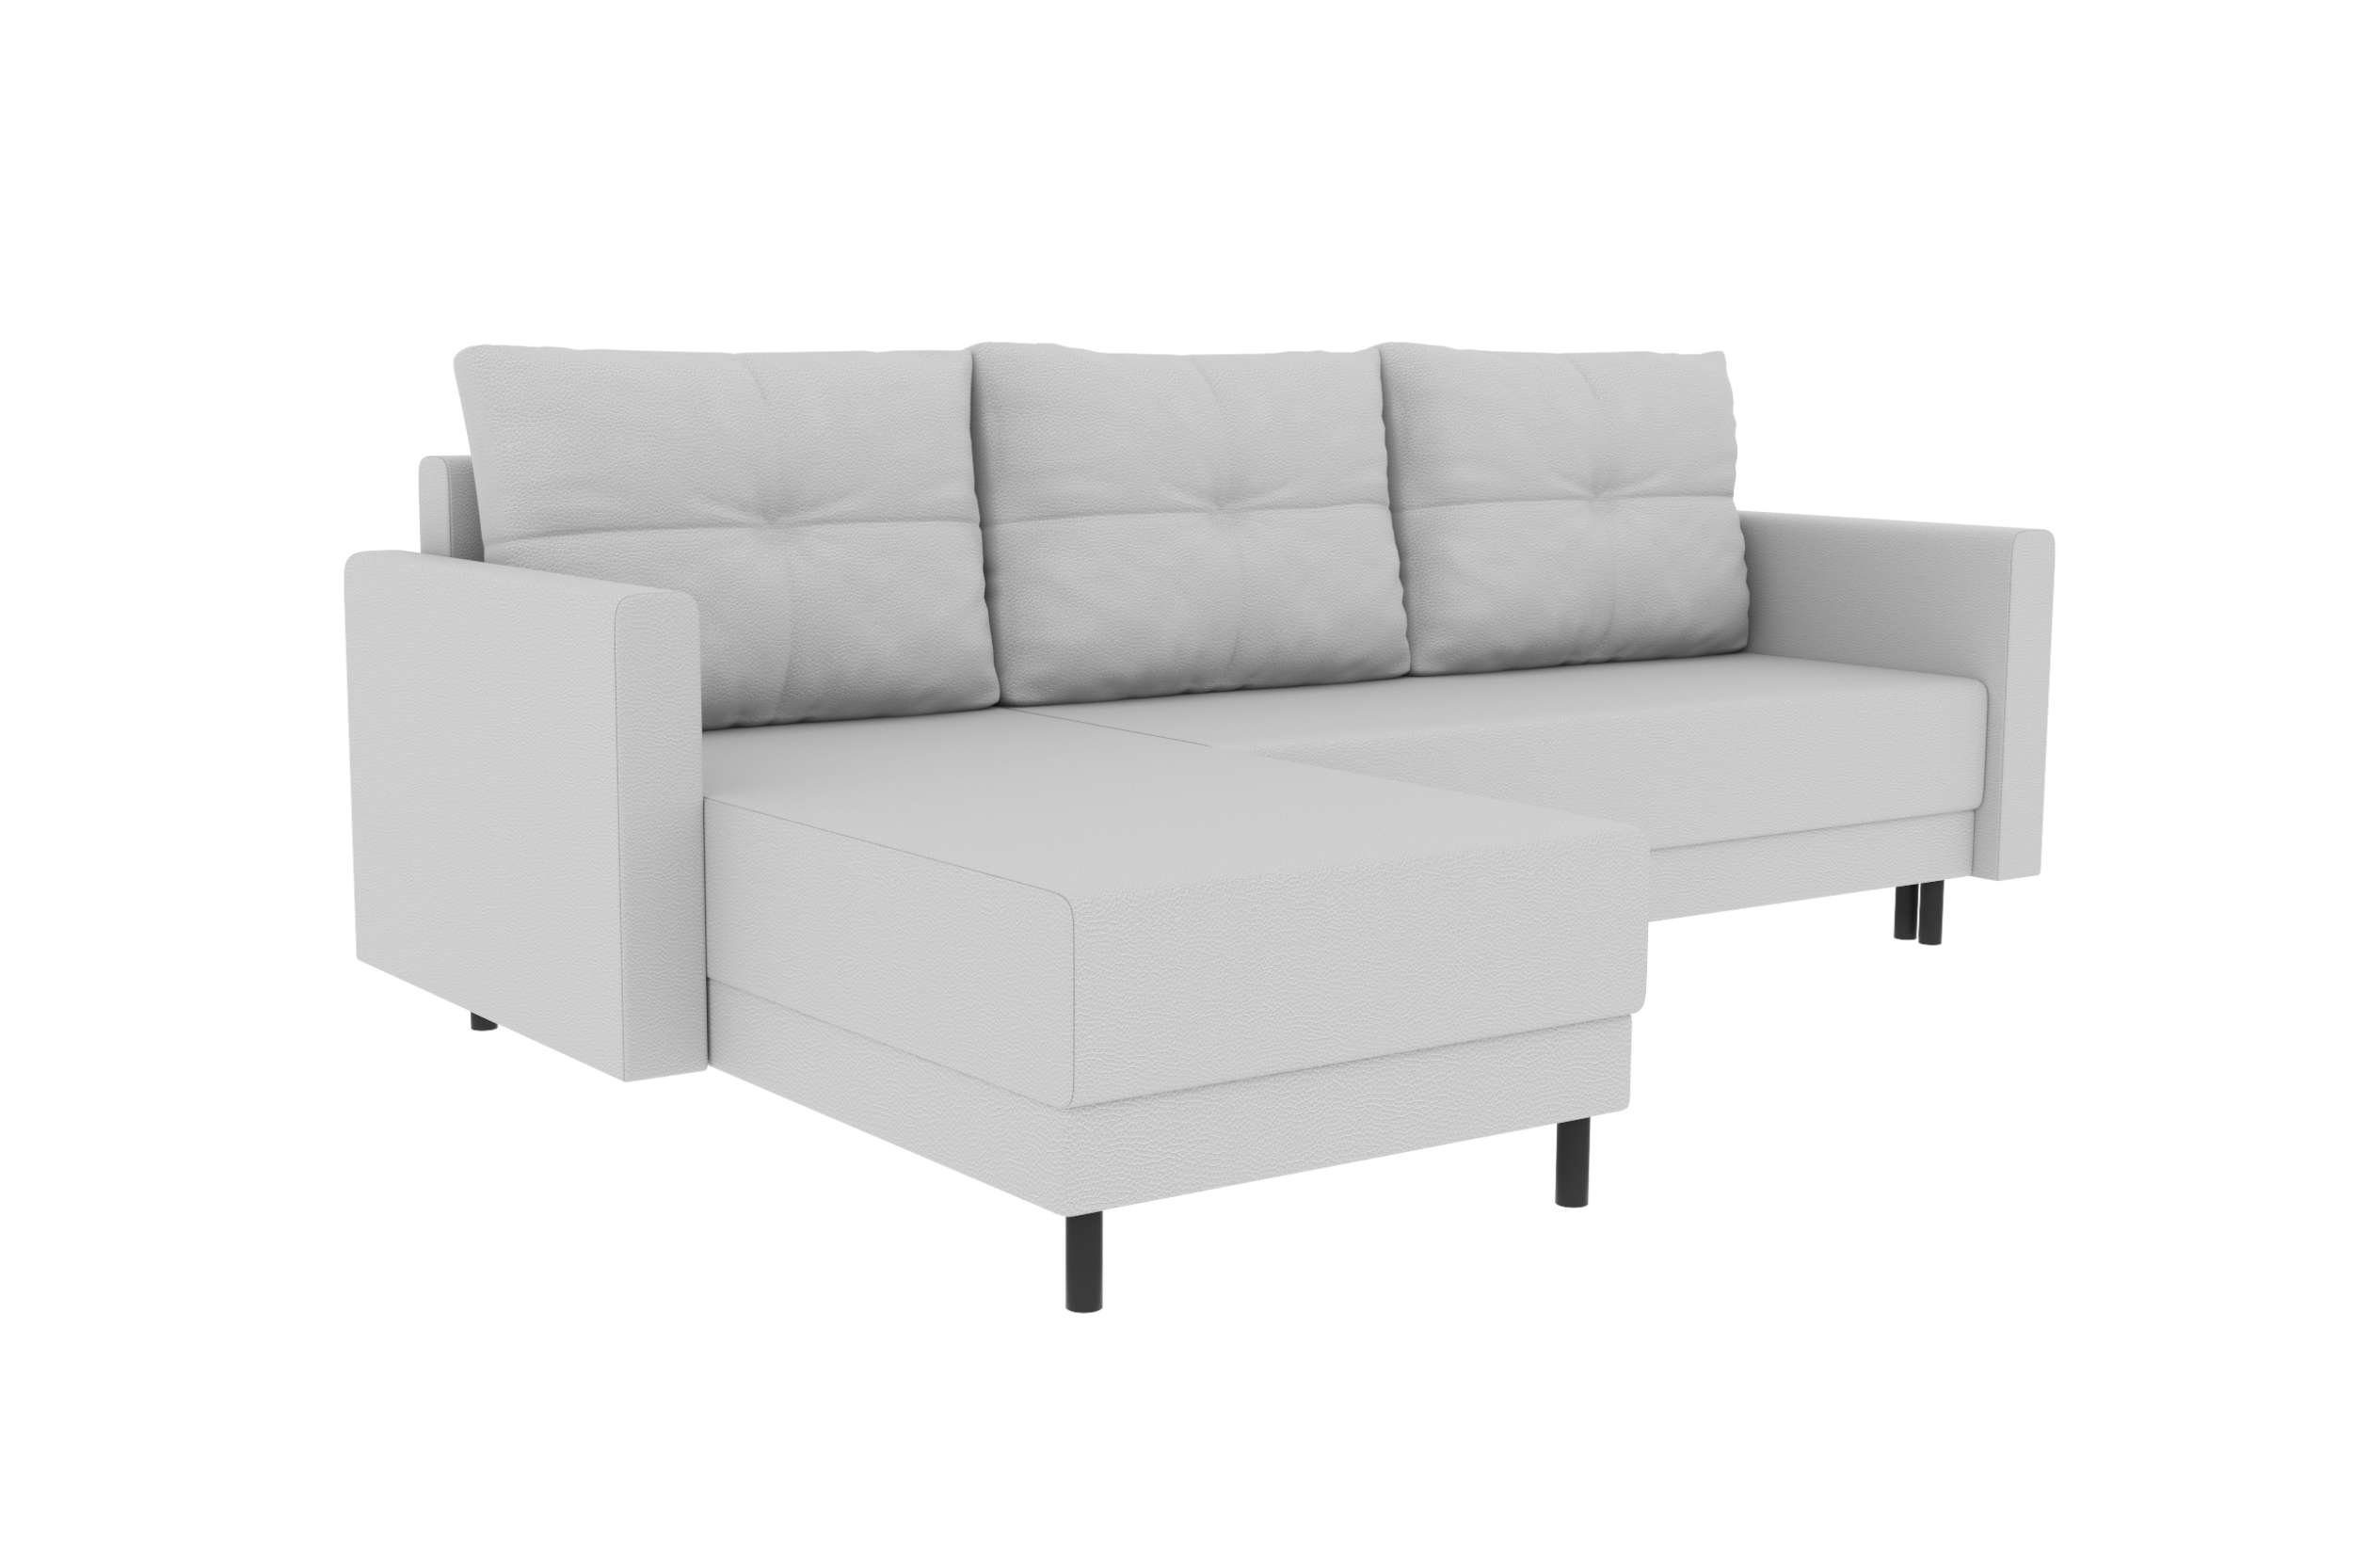 Stylefy Ecksofa Paloma, Eckcouch, Design mit mit Bettfunktion, Sofa, Bettkasten, Sitzkomfort, Modern L-Form